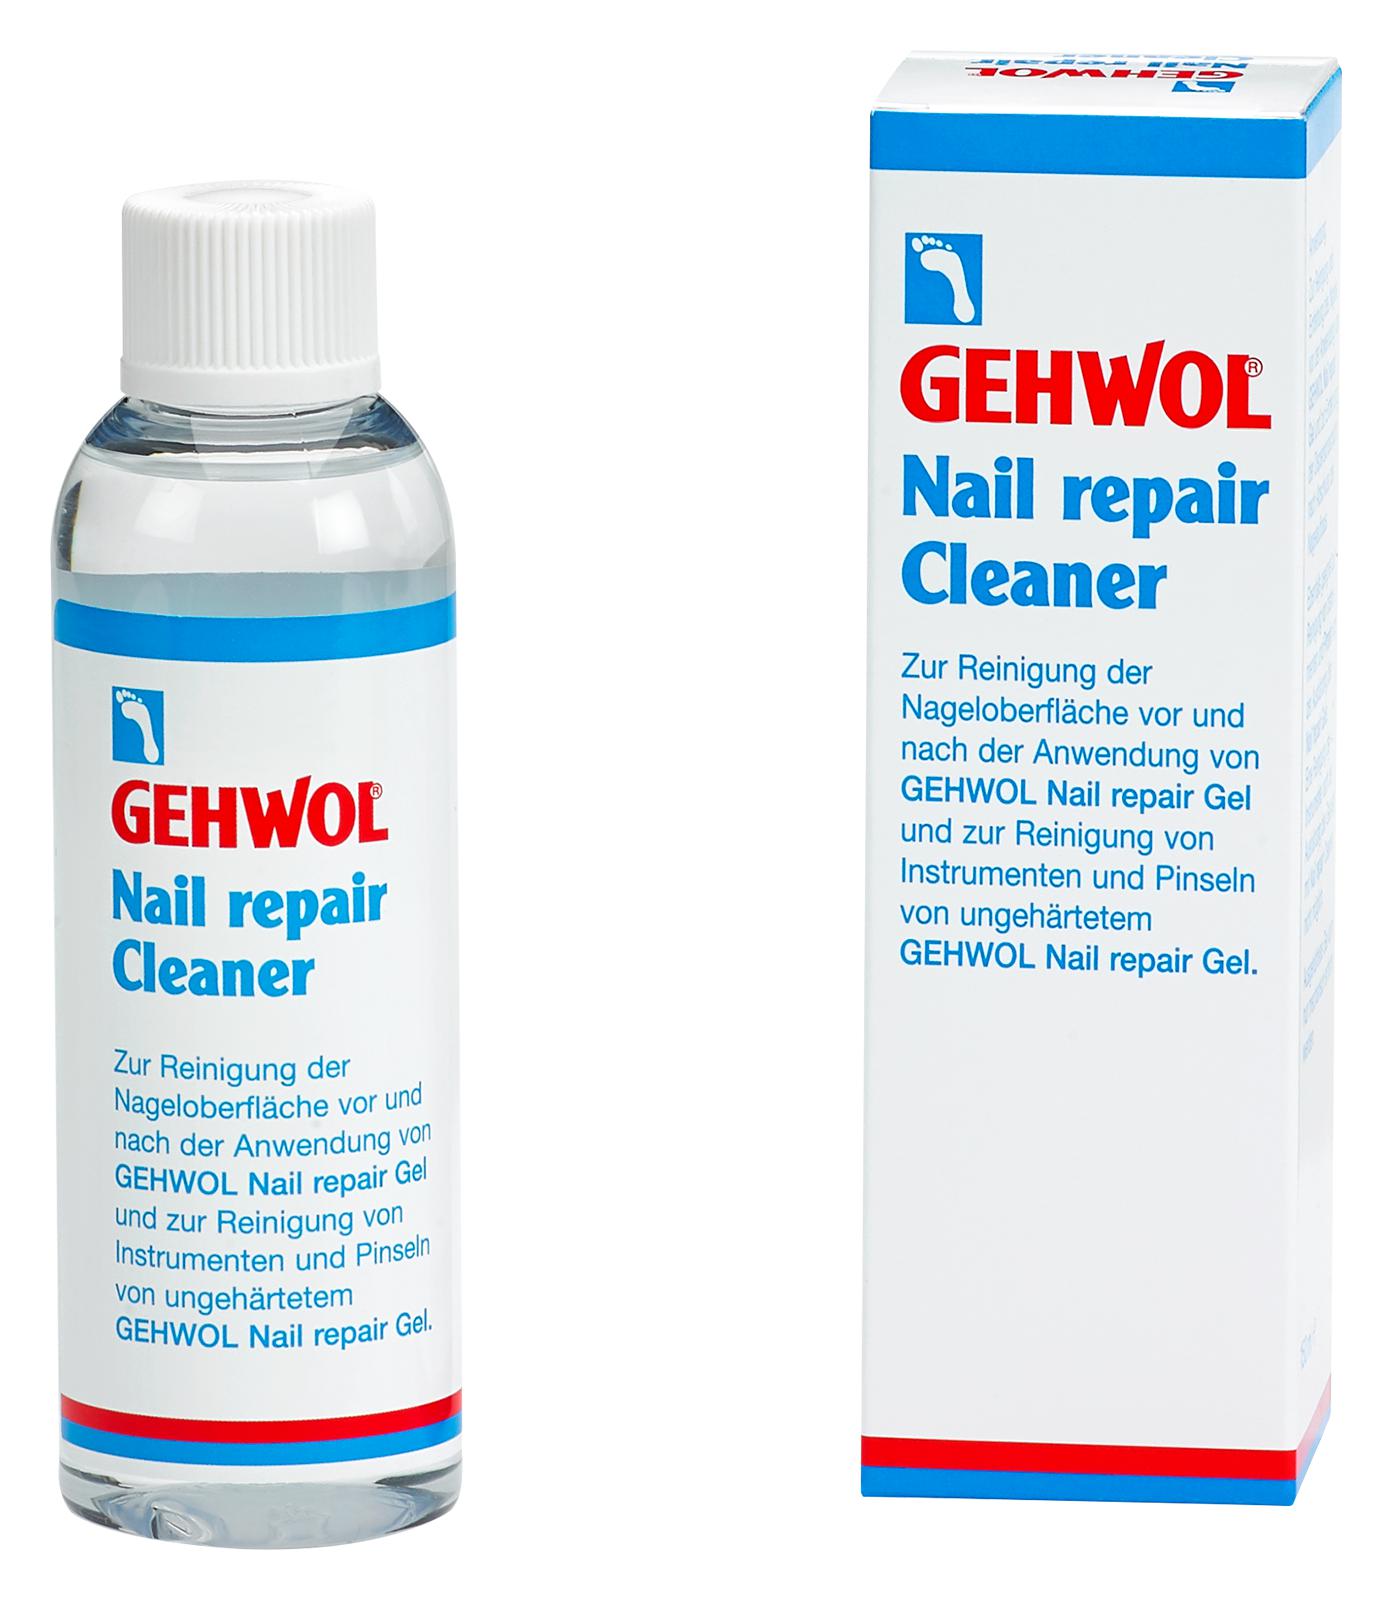 GEHWOL Nail repair Cleaner 150 ml